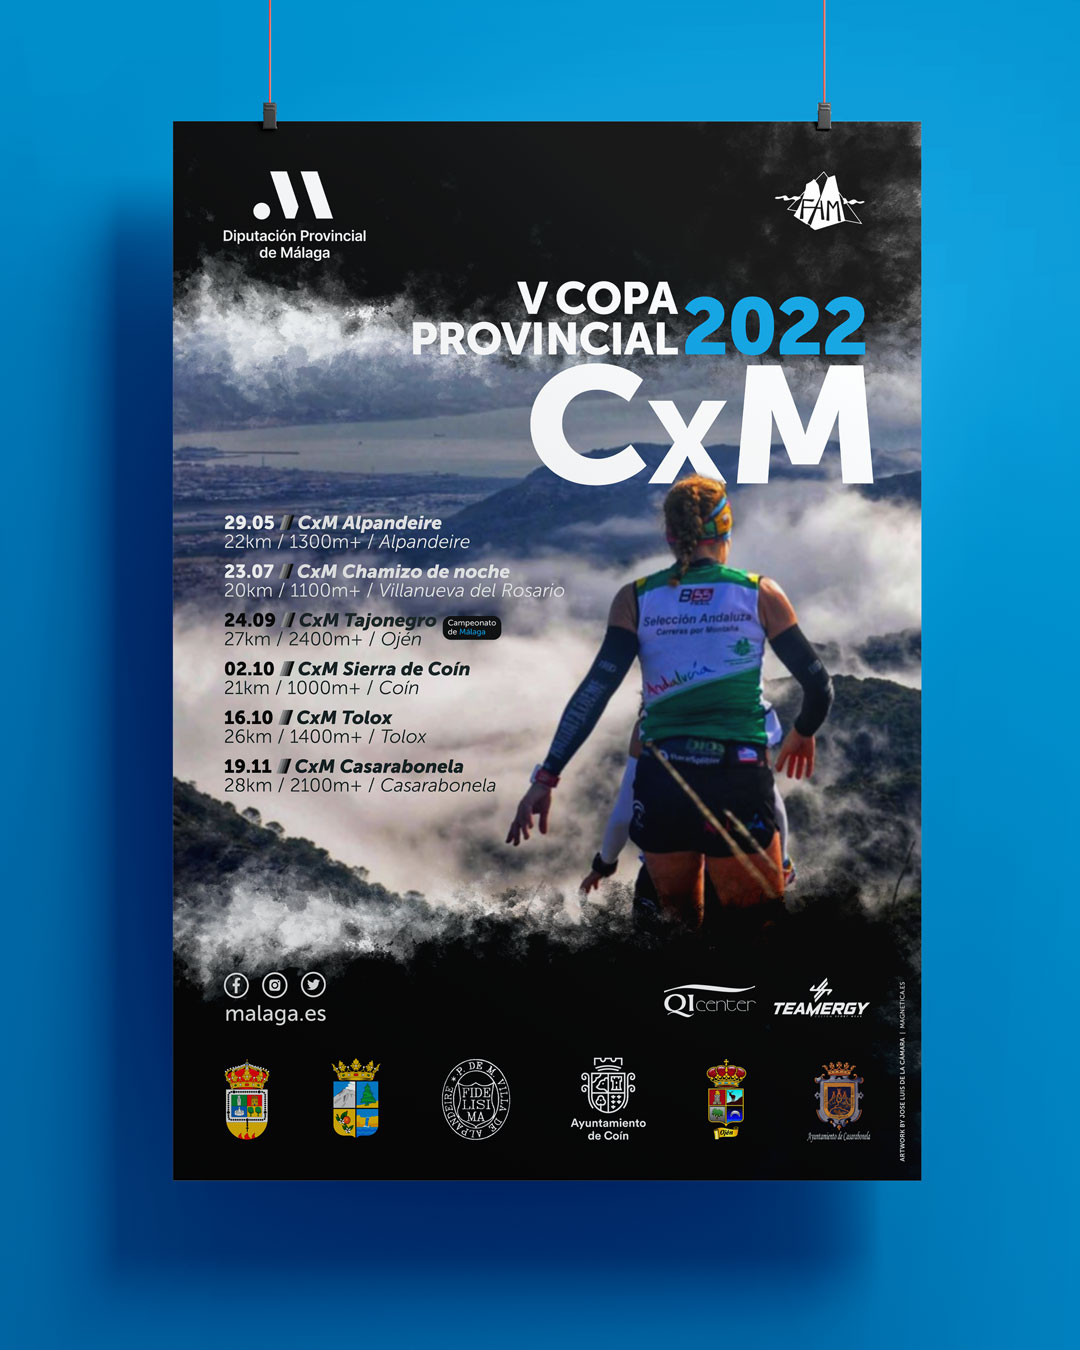 Diseño de cartel para la Copa Provincial CxM de Málaga 2022